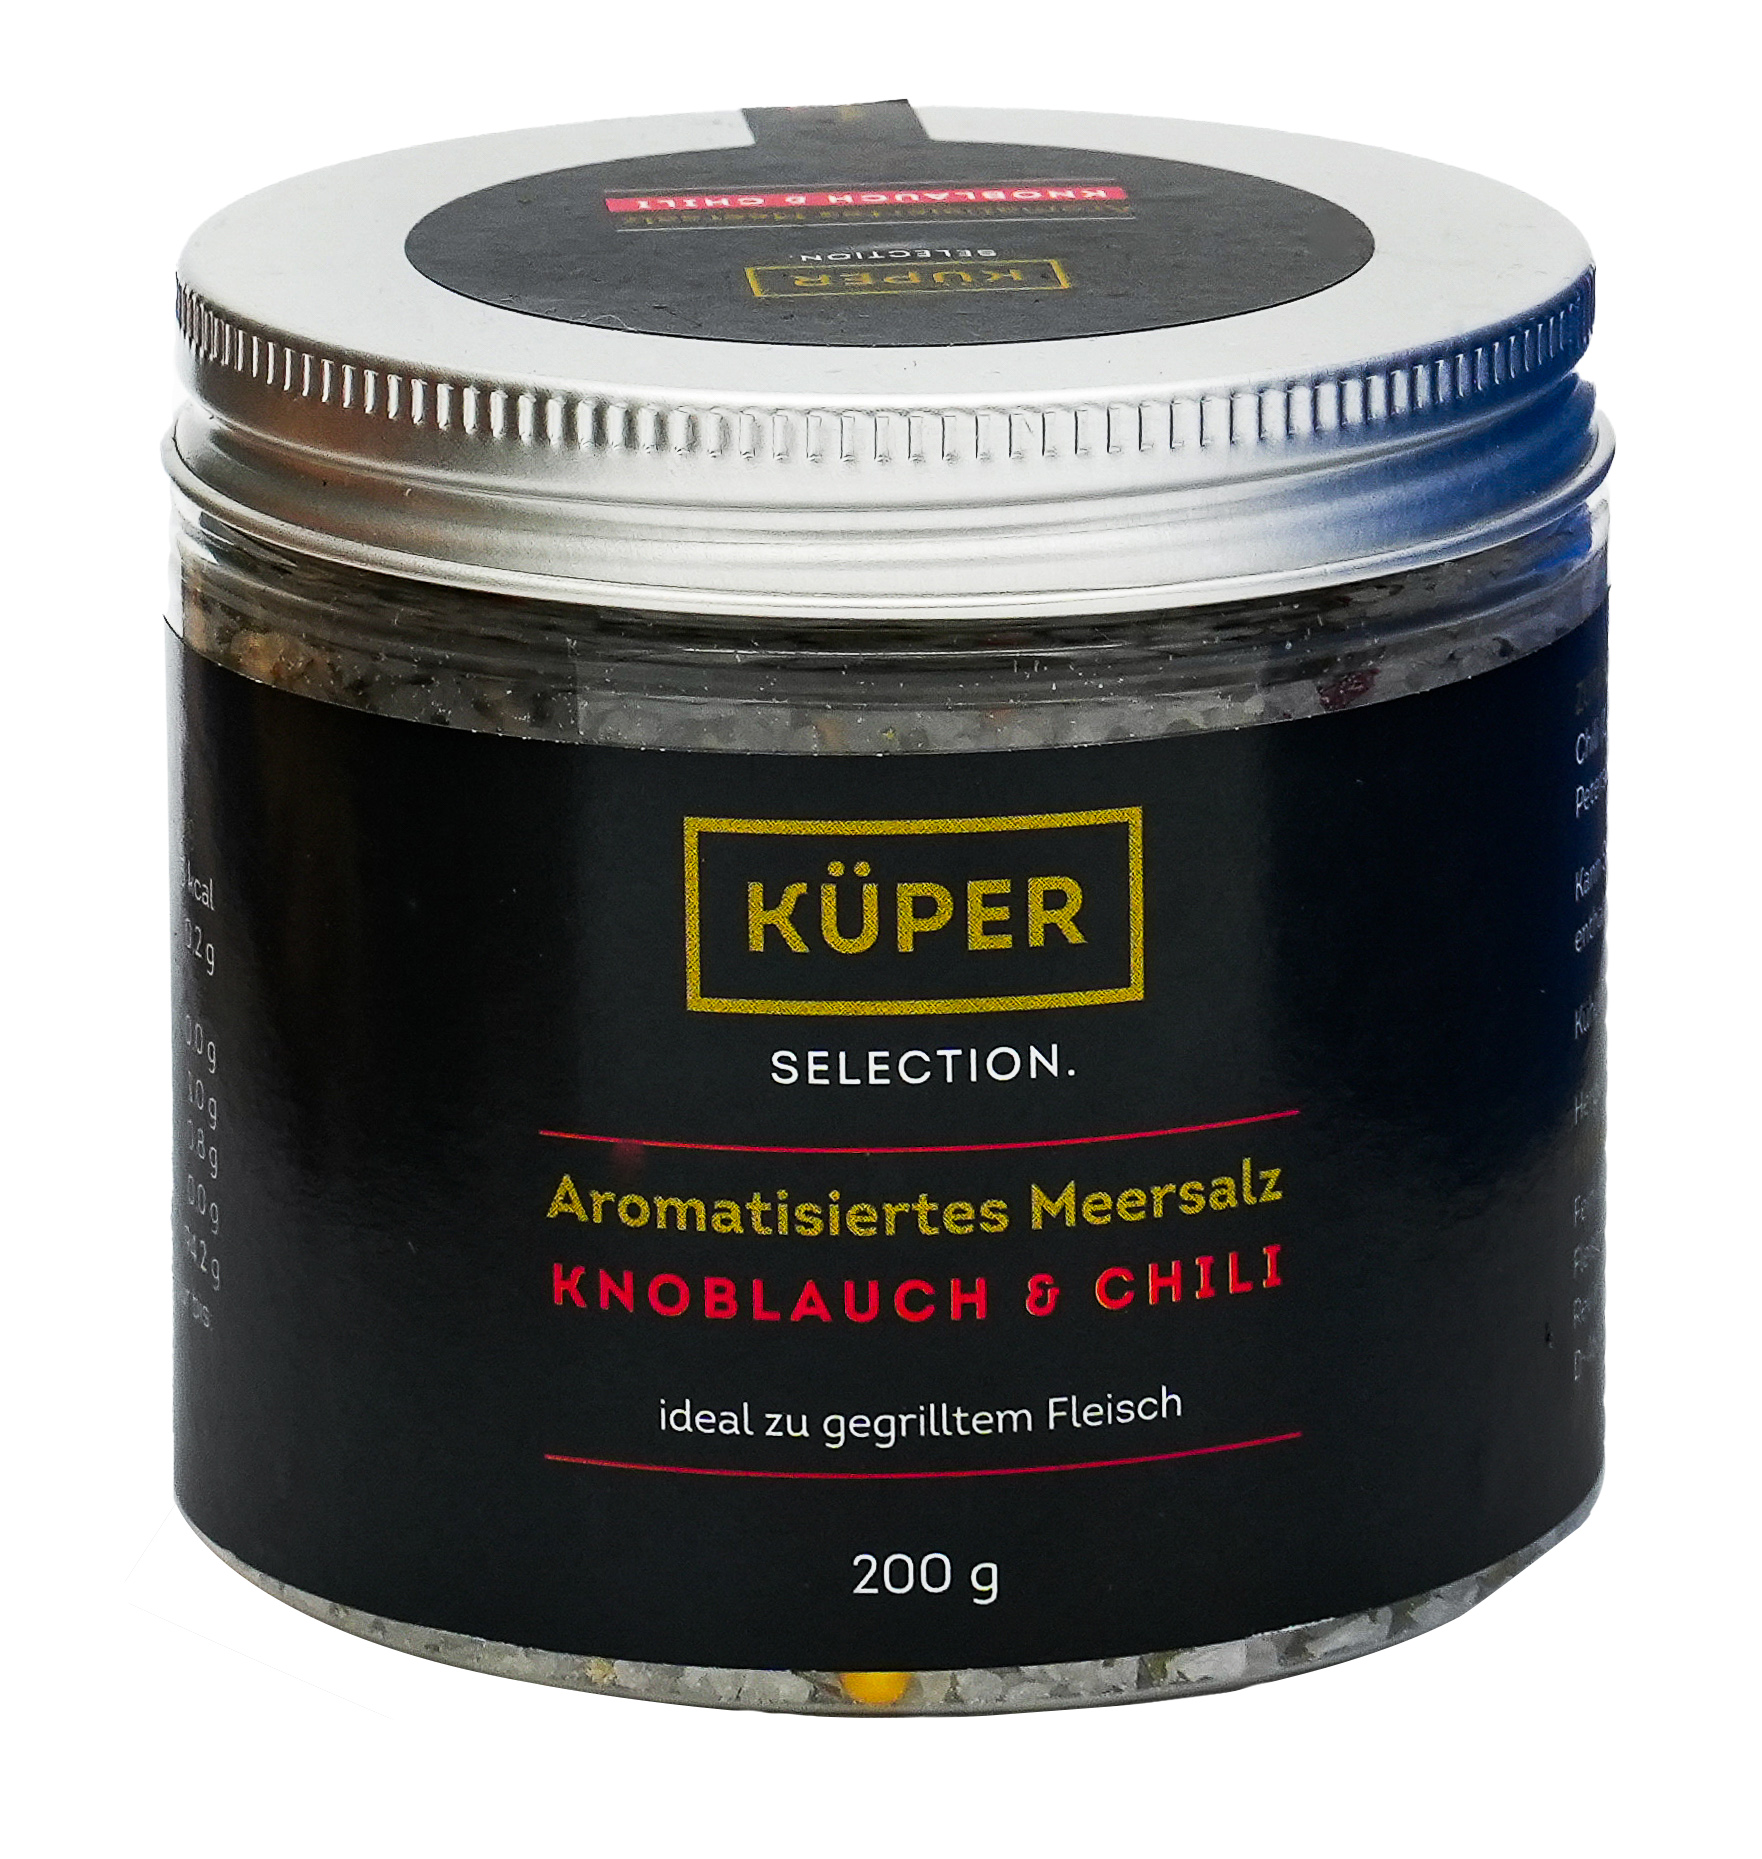 Küper Selection – 200g Aromatisiertes Meersalz mit 1,4% Chili, Knoblauch und Petersilie in grober Körnung, zum Würzen und Verfeinern